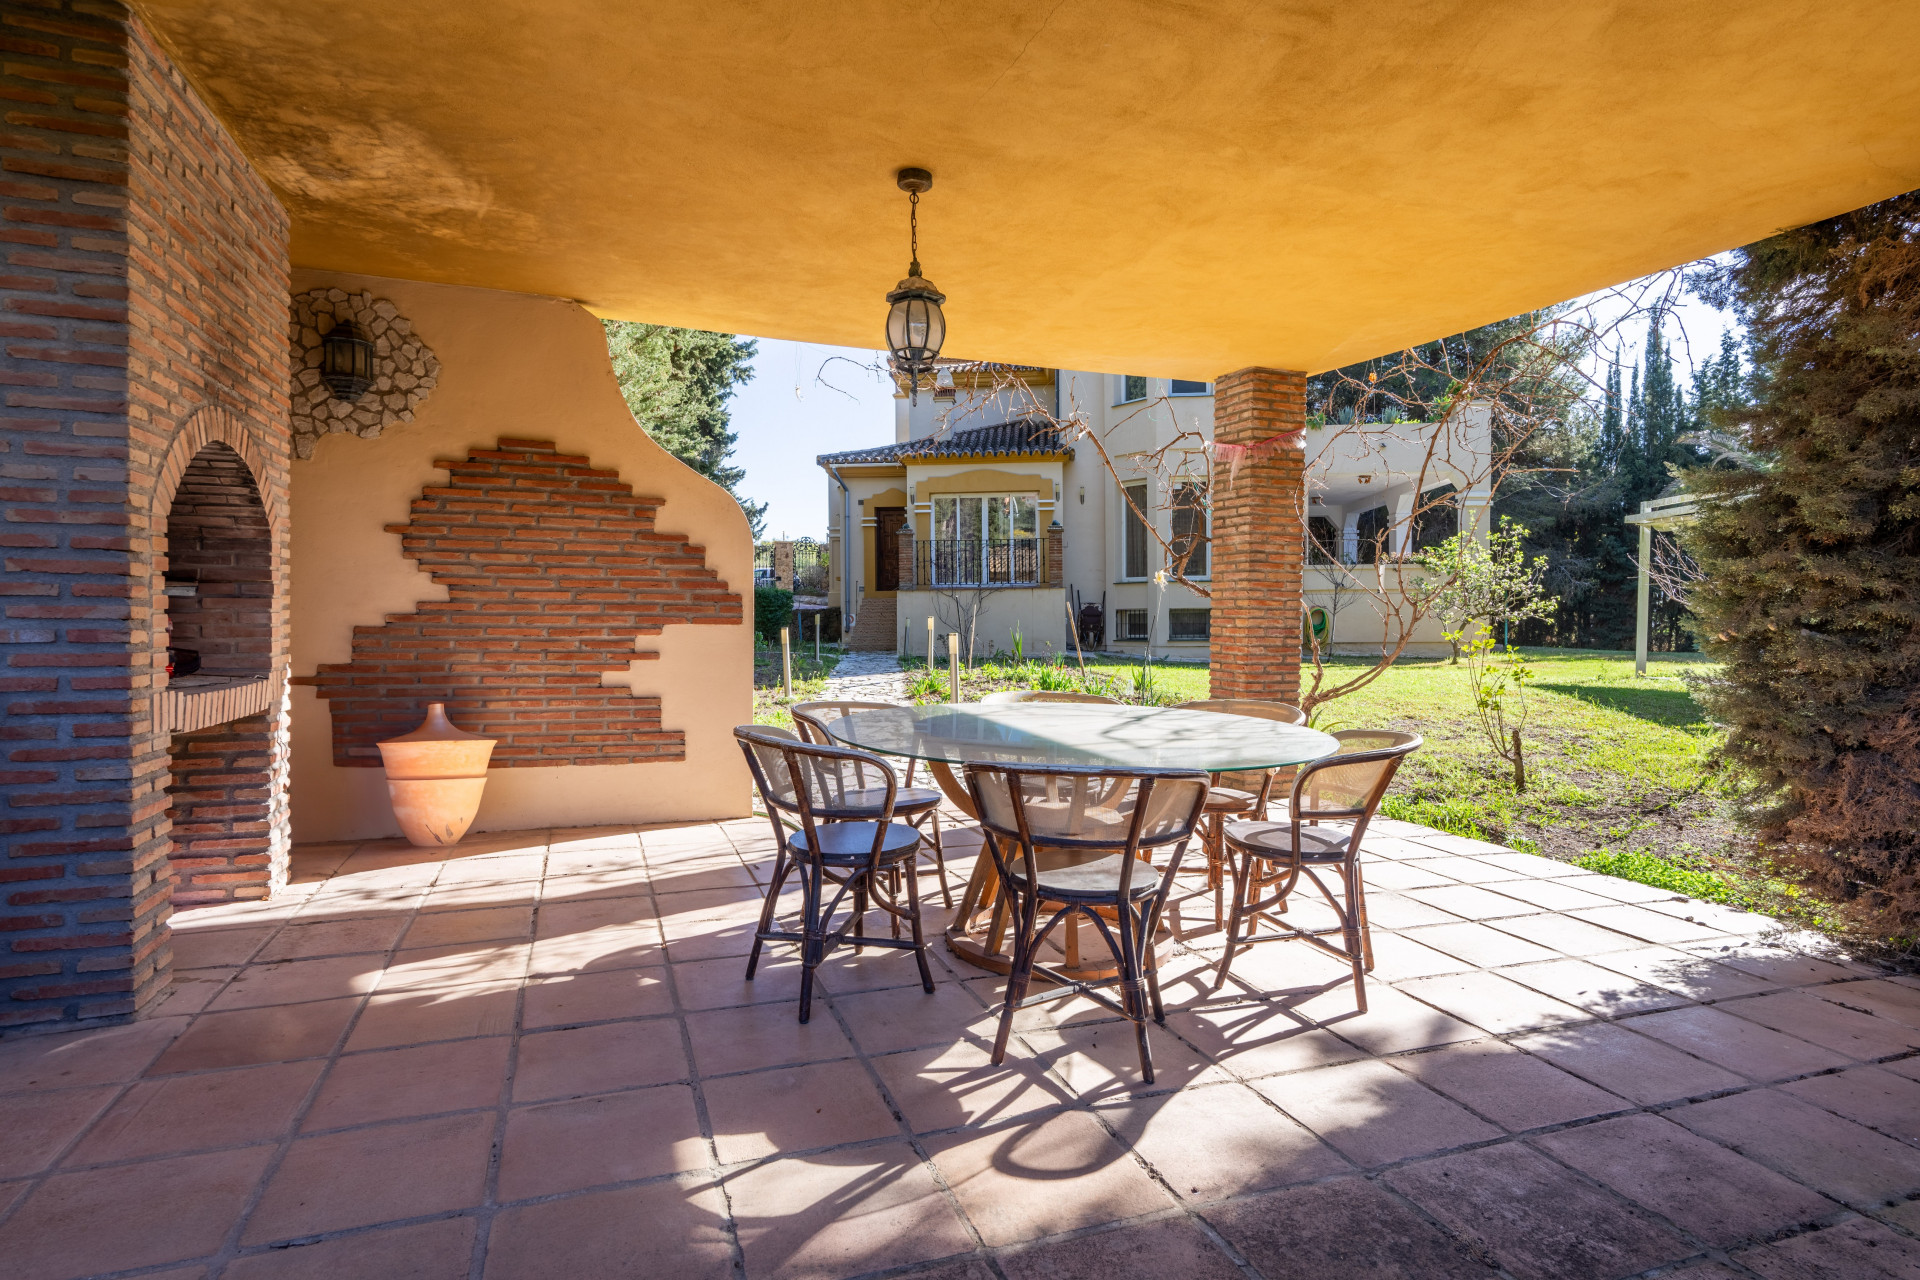 Encantadora villa de 4 dormitorios de estilo mediterráneo en la prestigiosa zona de Paraiso Alto